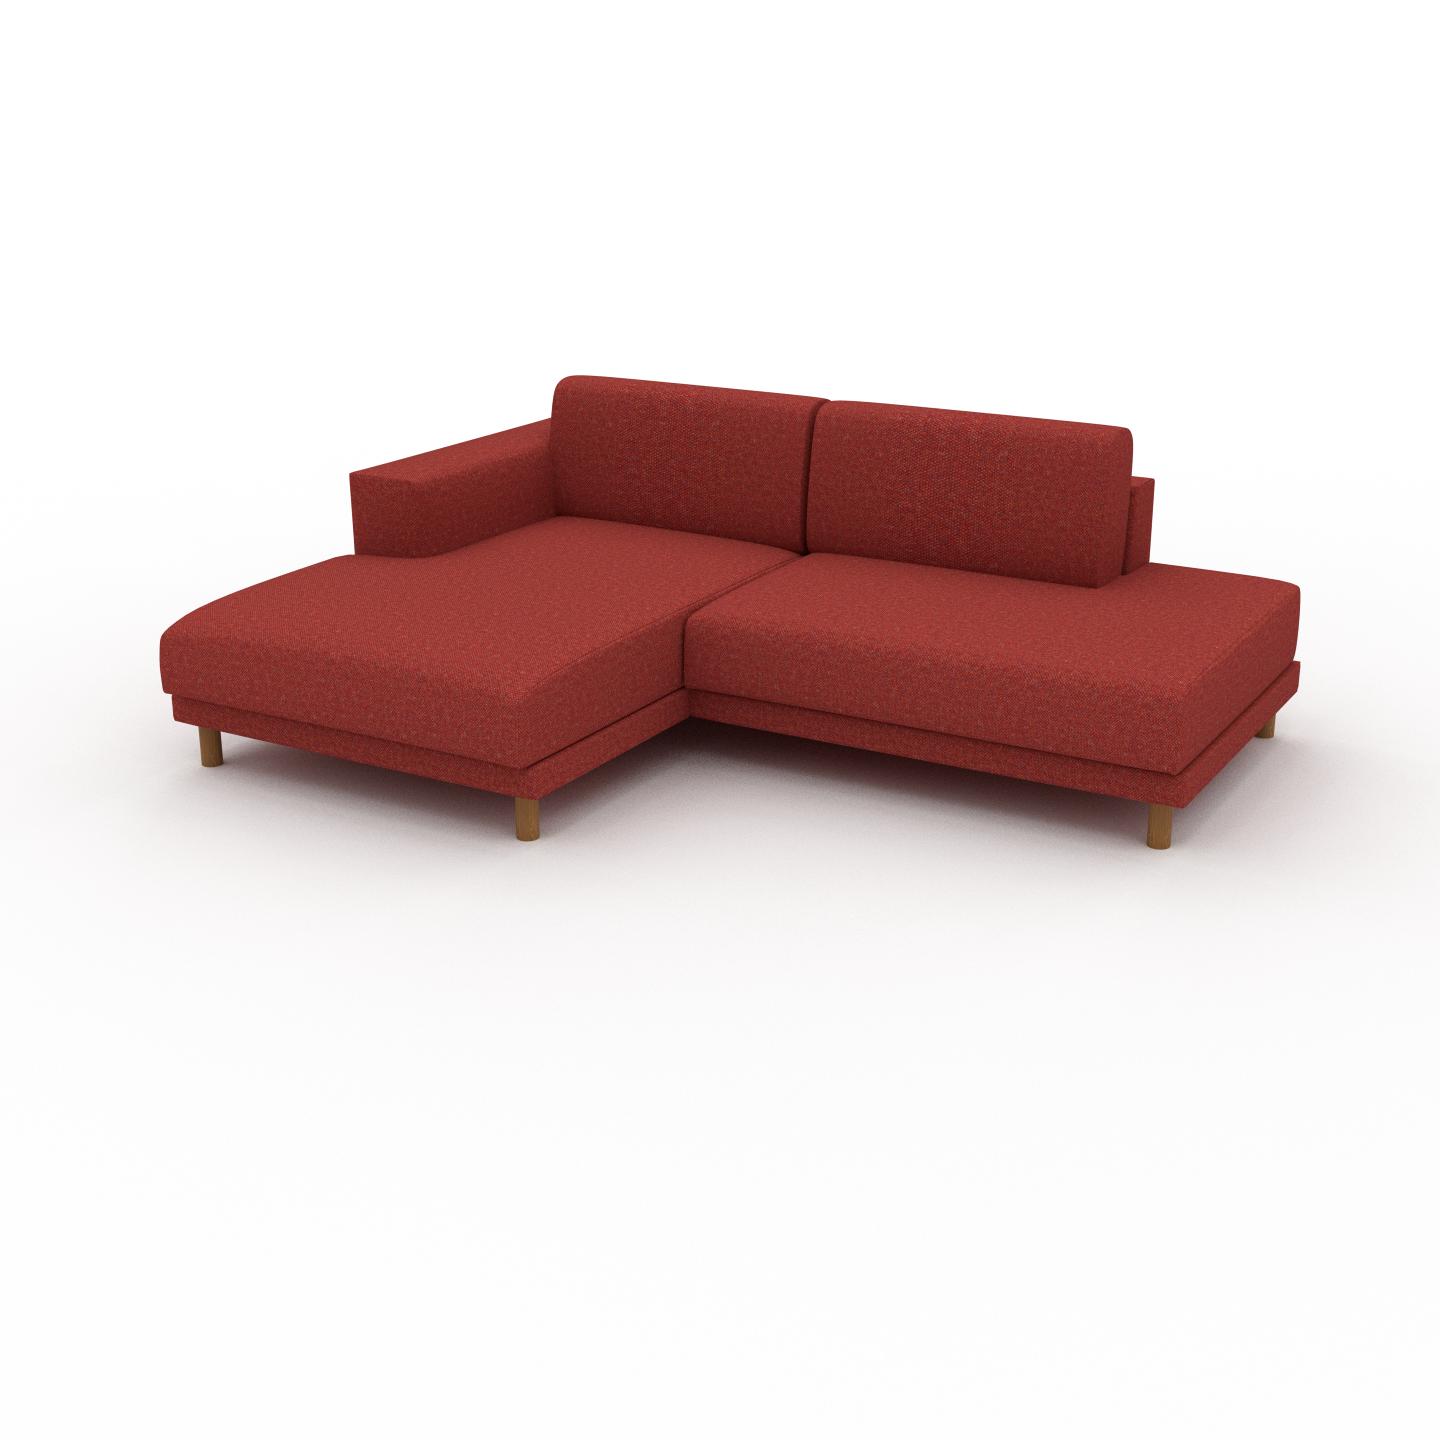 MYCS Sofa Blutorange - Moderne Designer-Couch: Hochwertige Qualität, einzigartiges Design - 224 x 75 x 162 cm, Komplett anpassbar